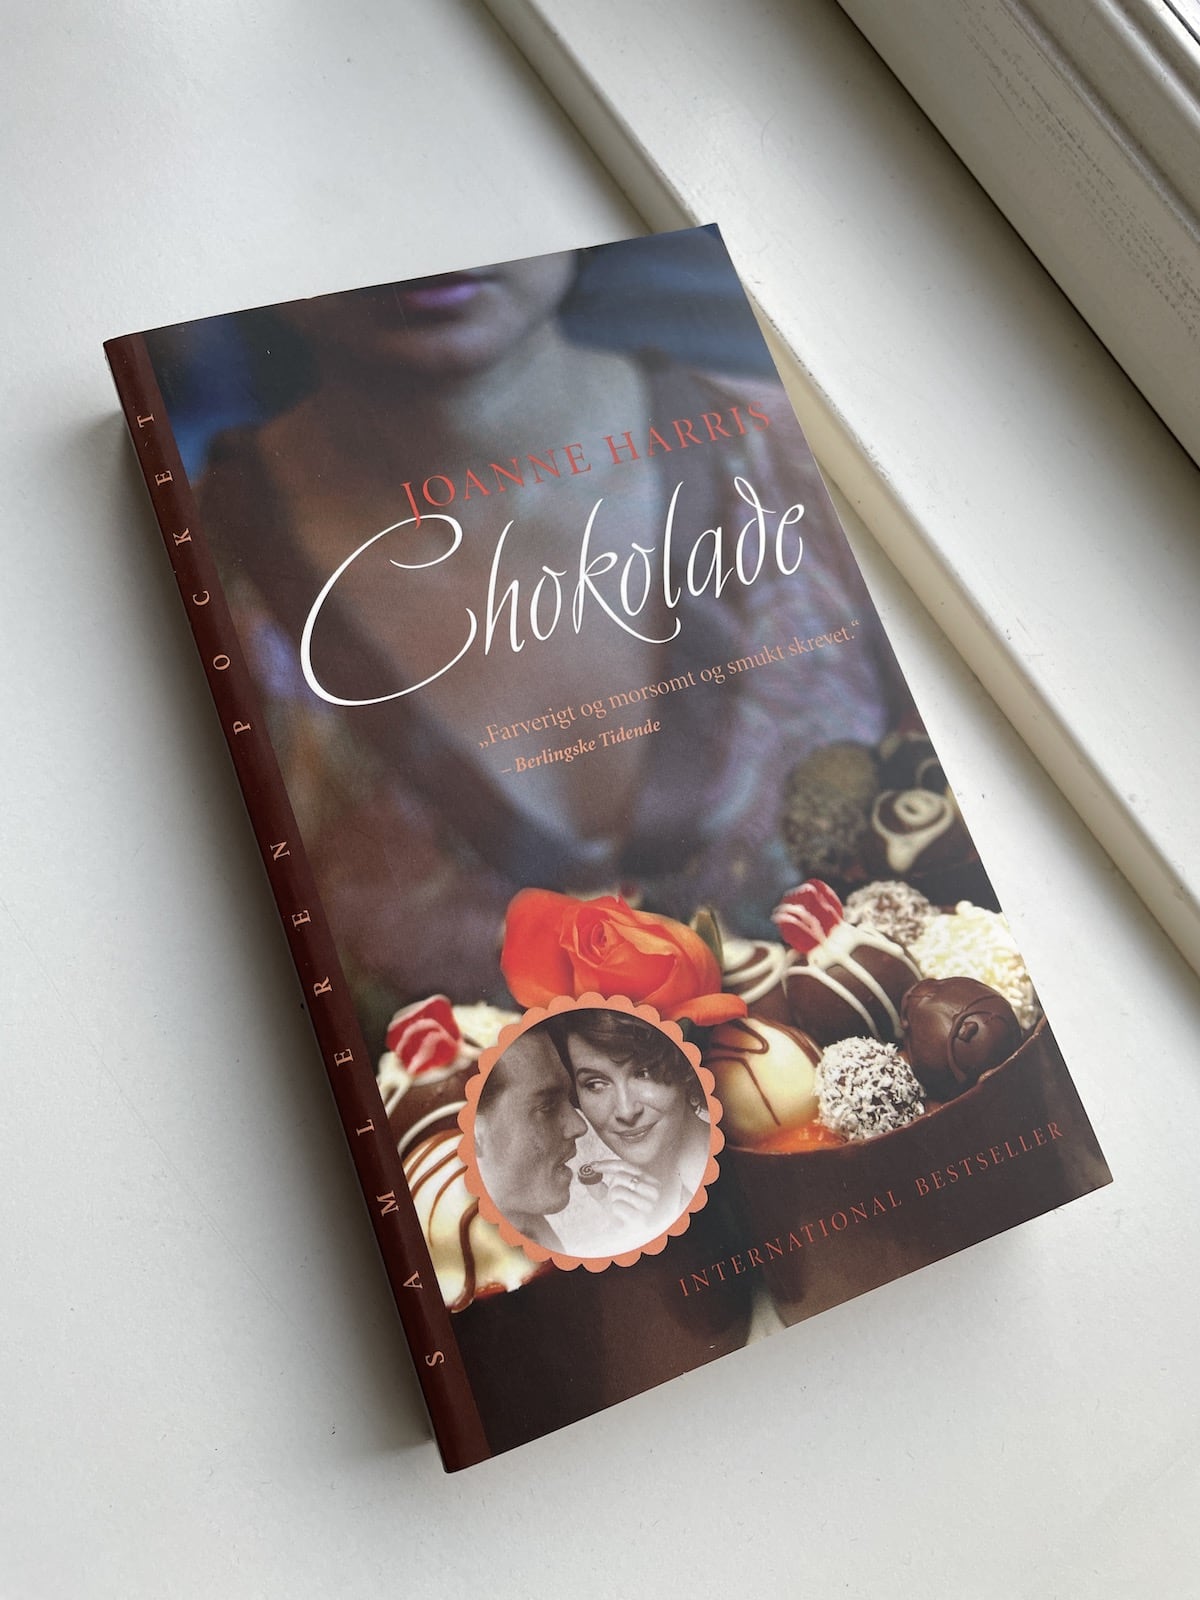 Chokolade, Joanne Harris, brugt bog